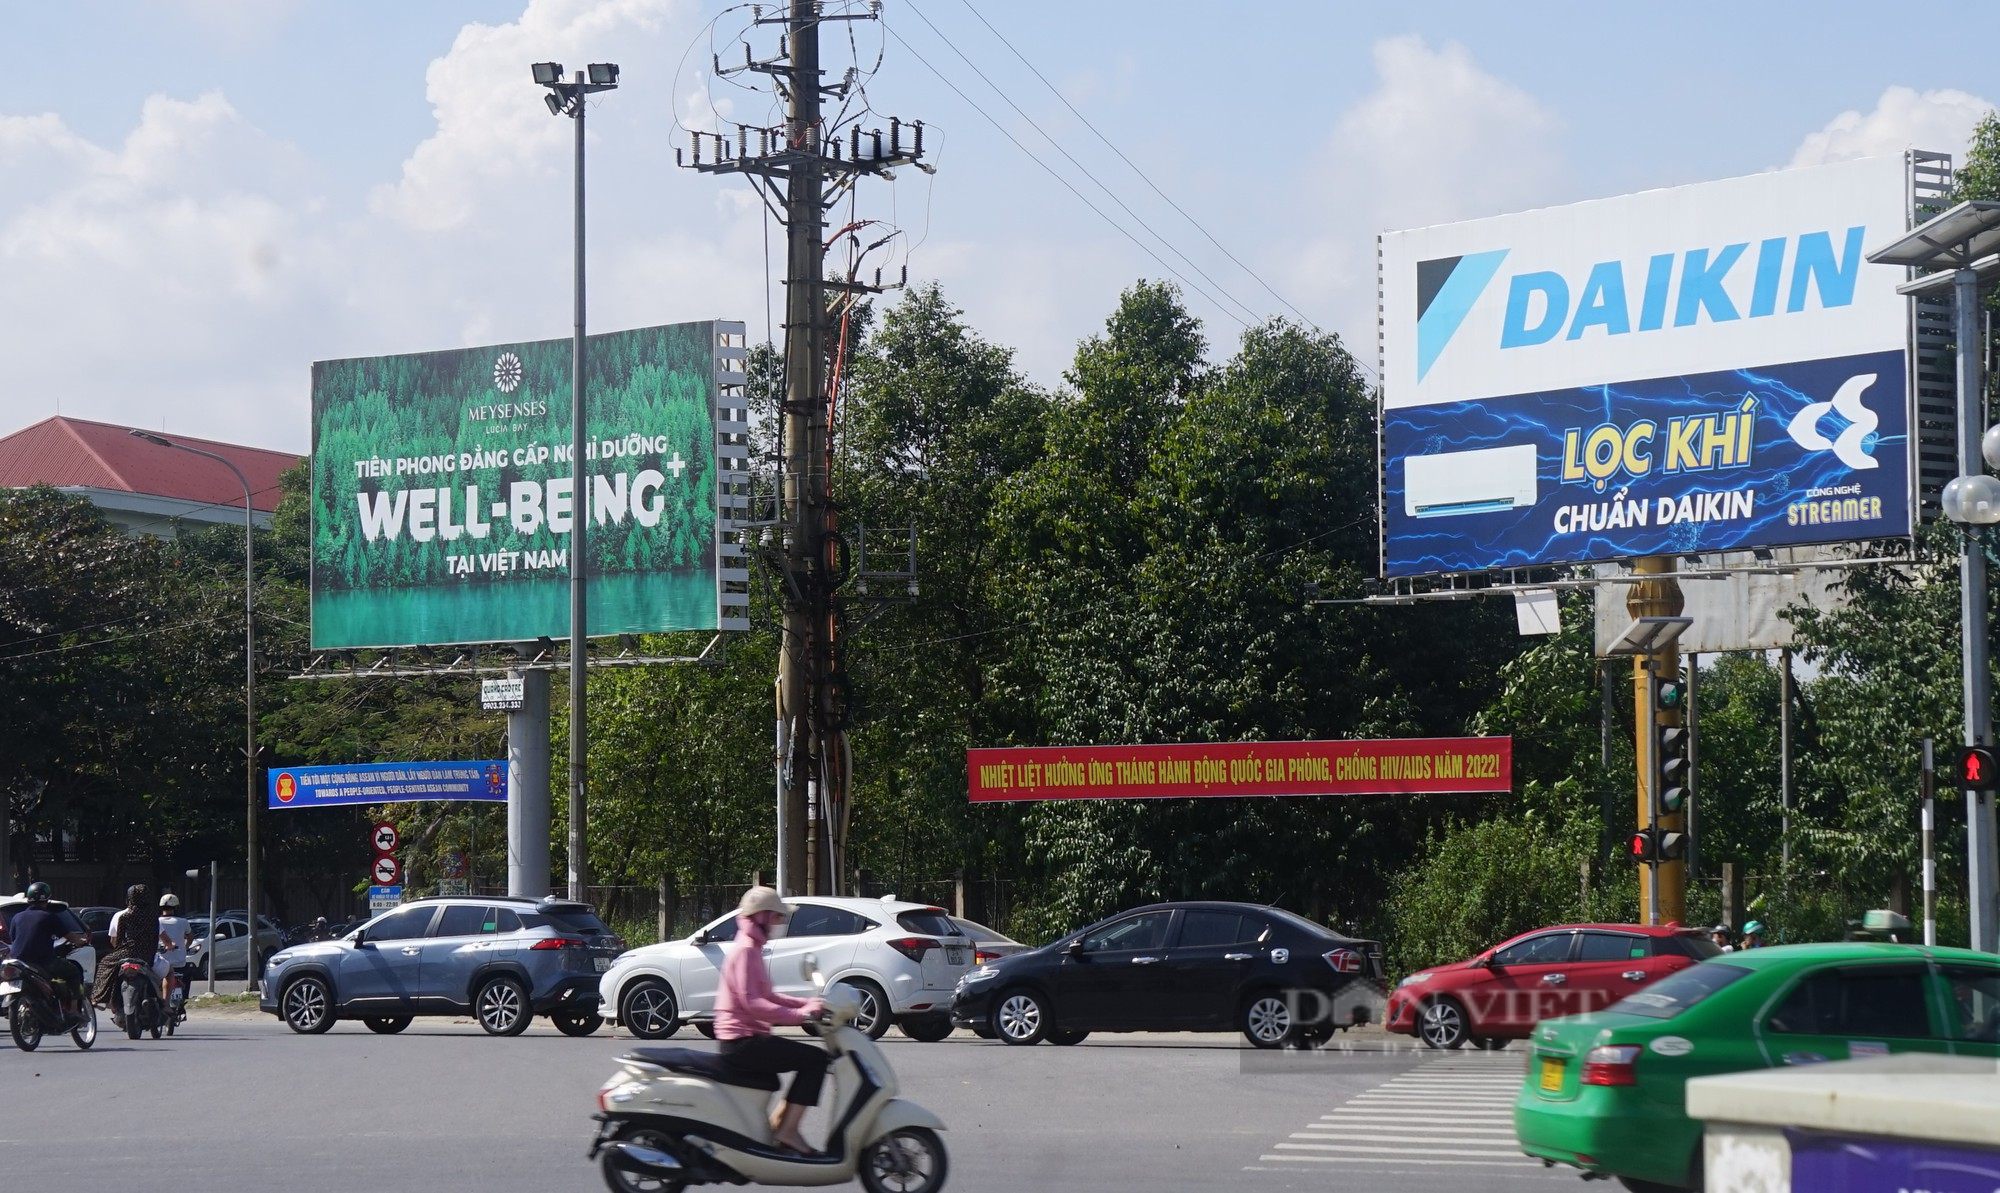 Bát nháo biển quảng cáo khủng ở thành phố Vinh, Nghệ An - Ảnh 15.